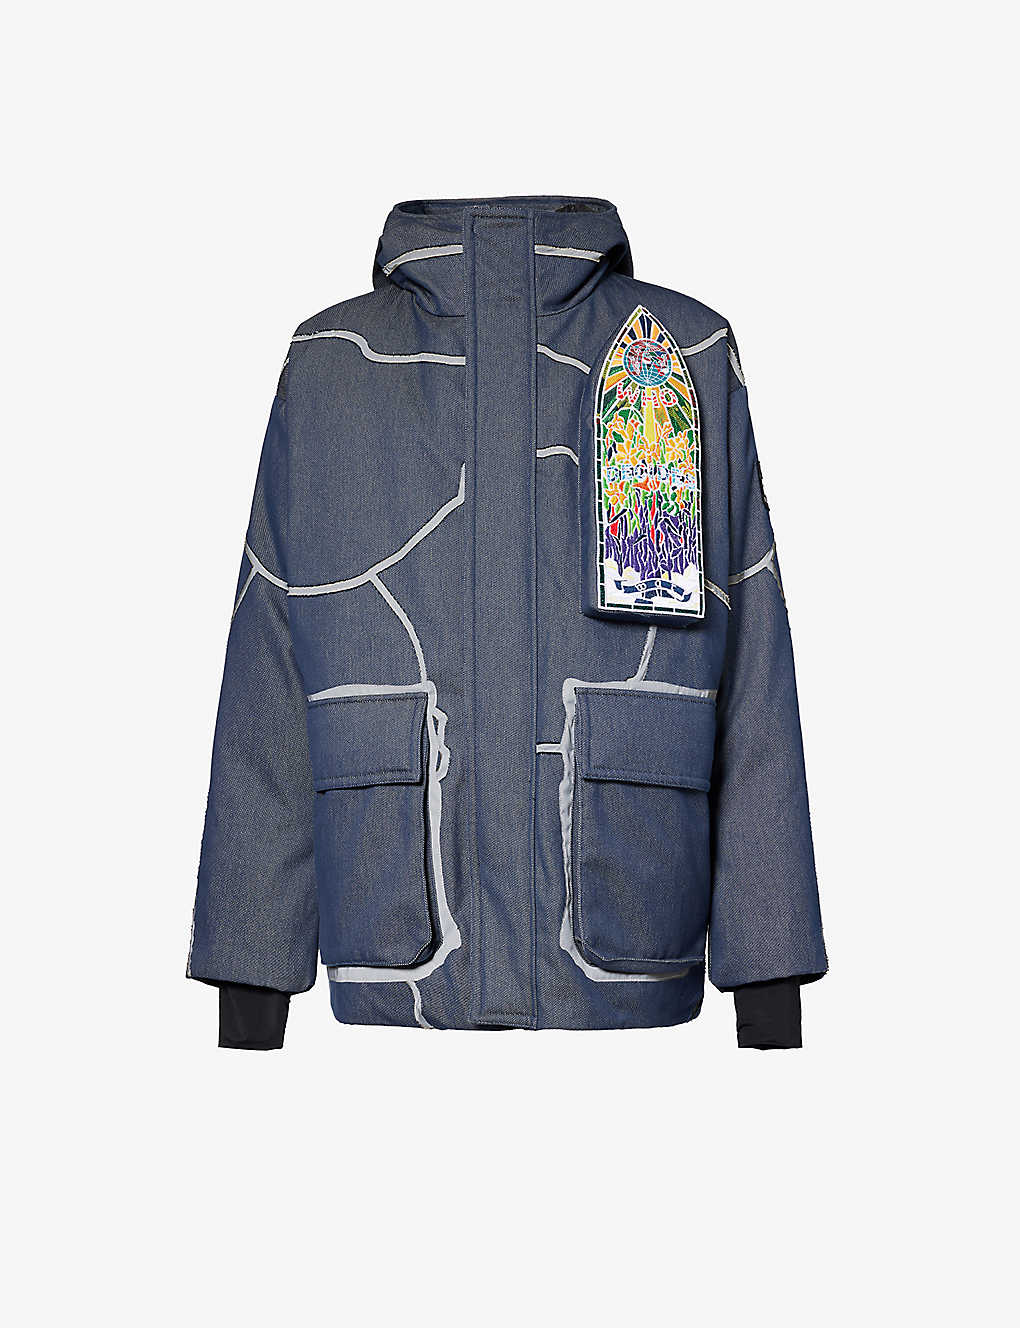 Who Decides War By Ev Bravado Mens Denim Brand-embroidered Padded Denim Jacket In Blue